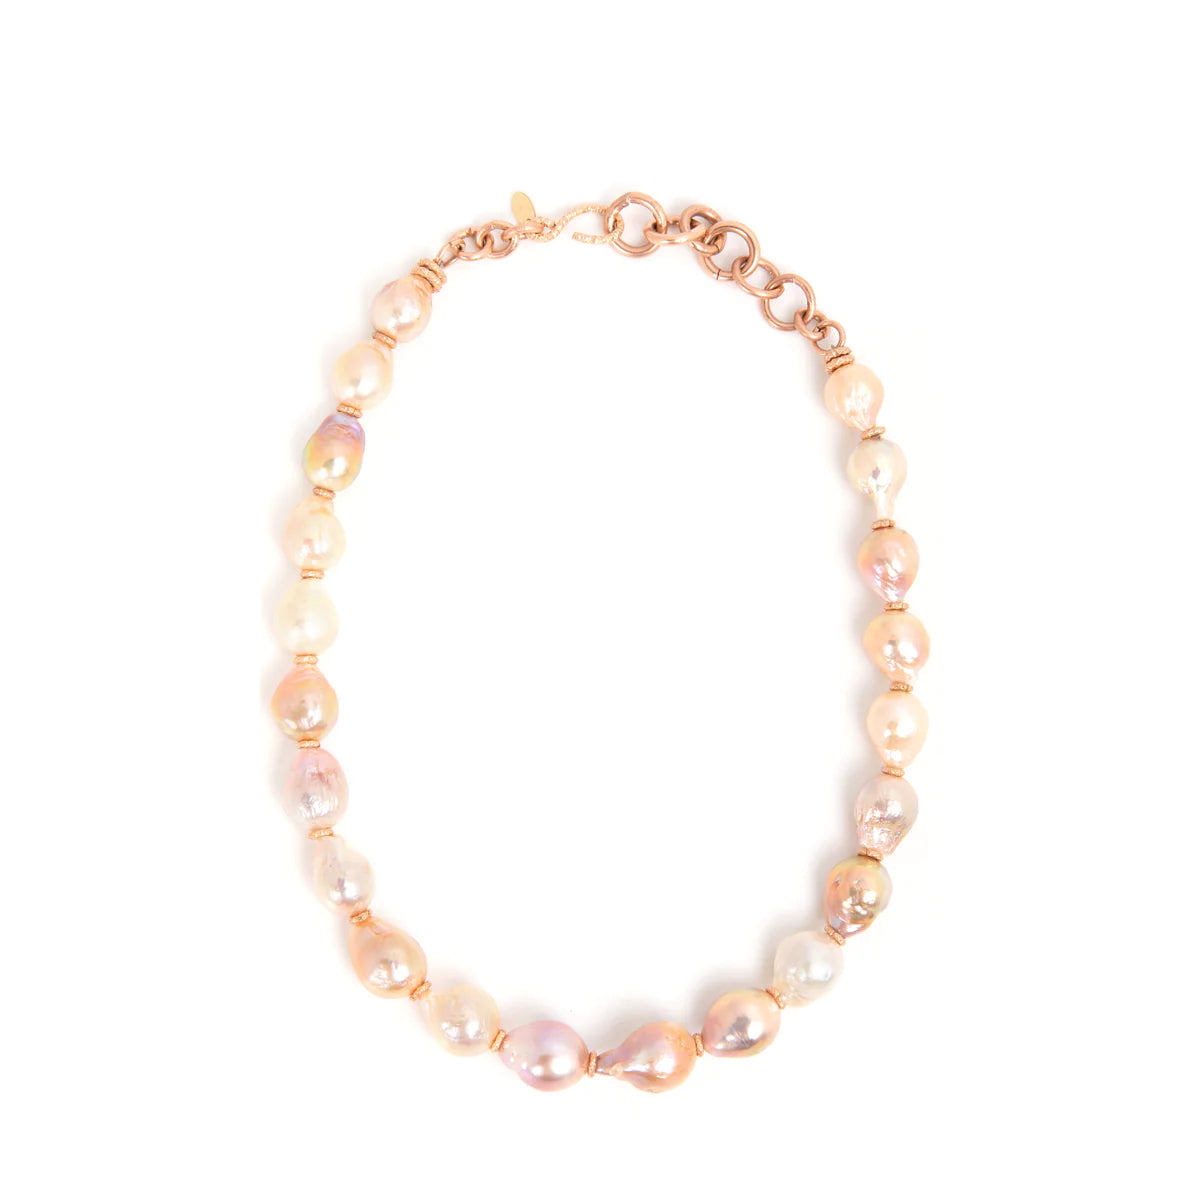 Barroca Necklace #1 (45cm) - Salmon Pearl